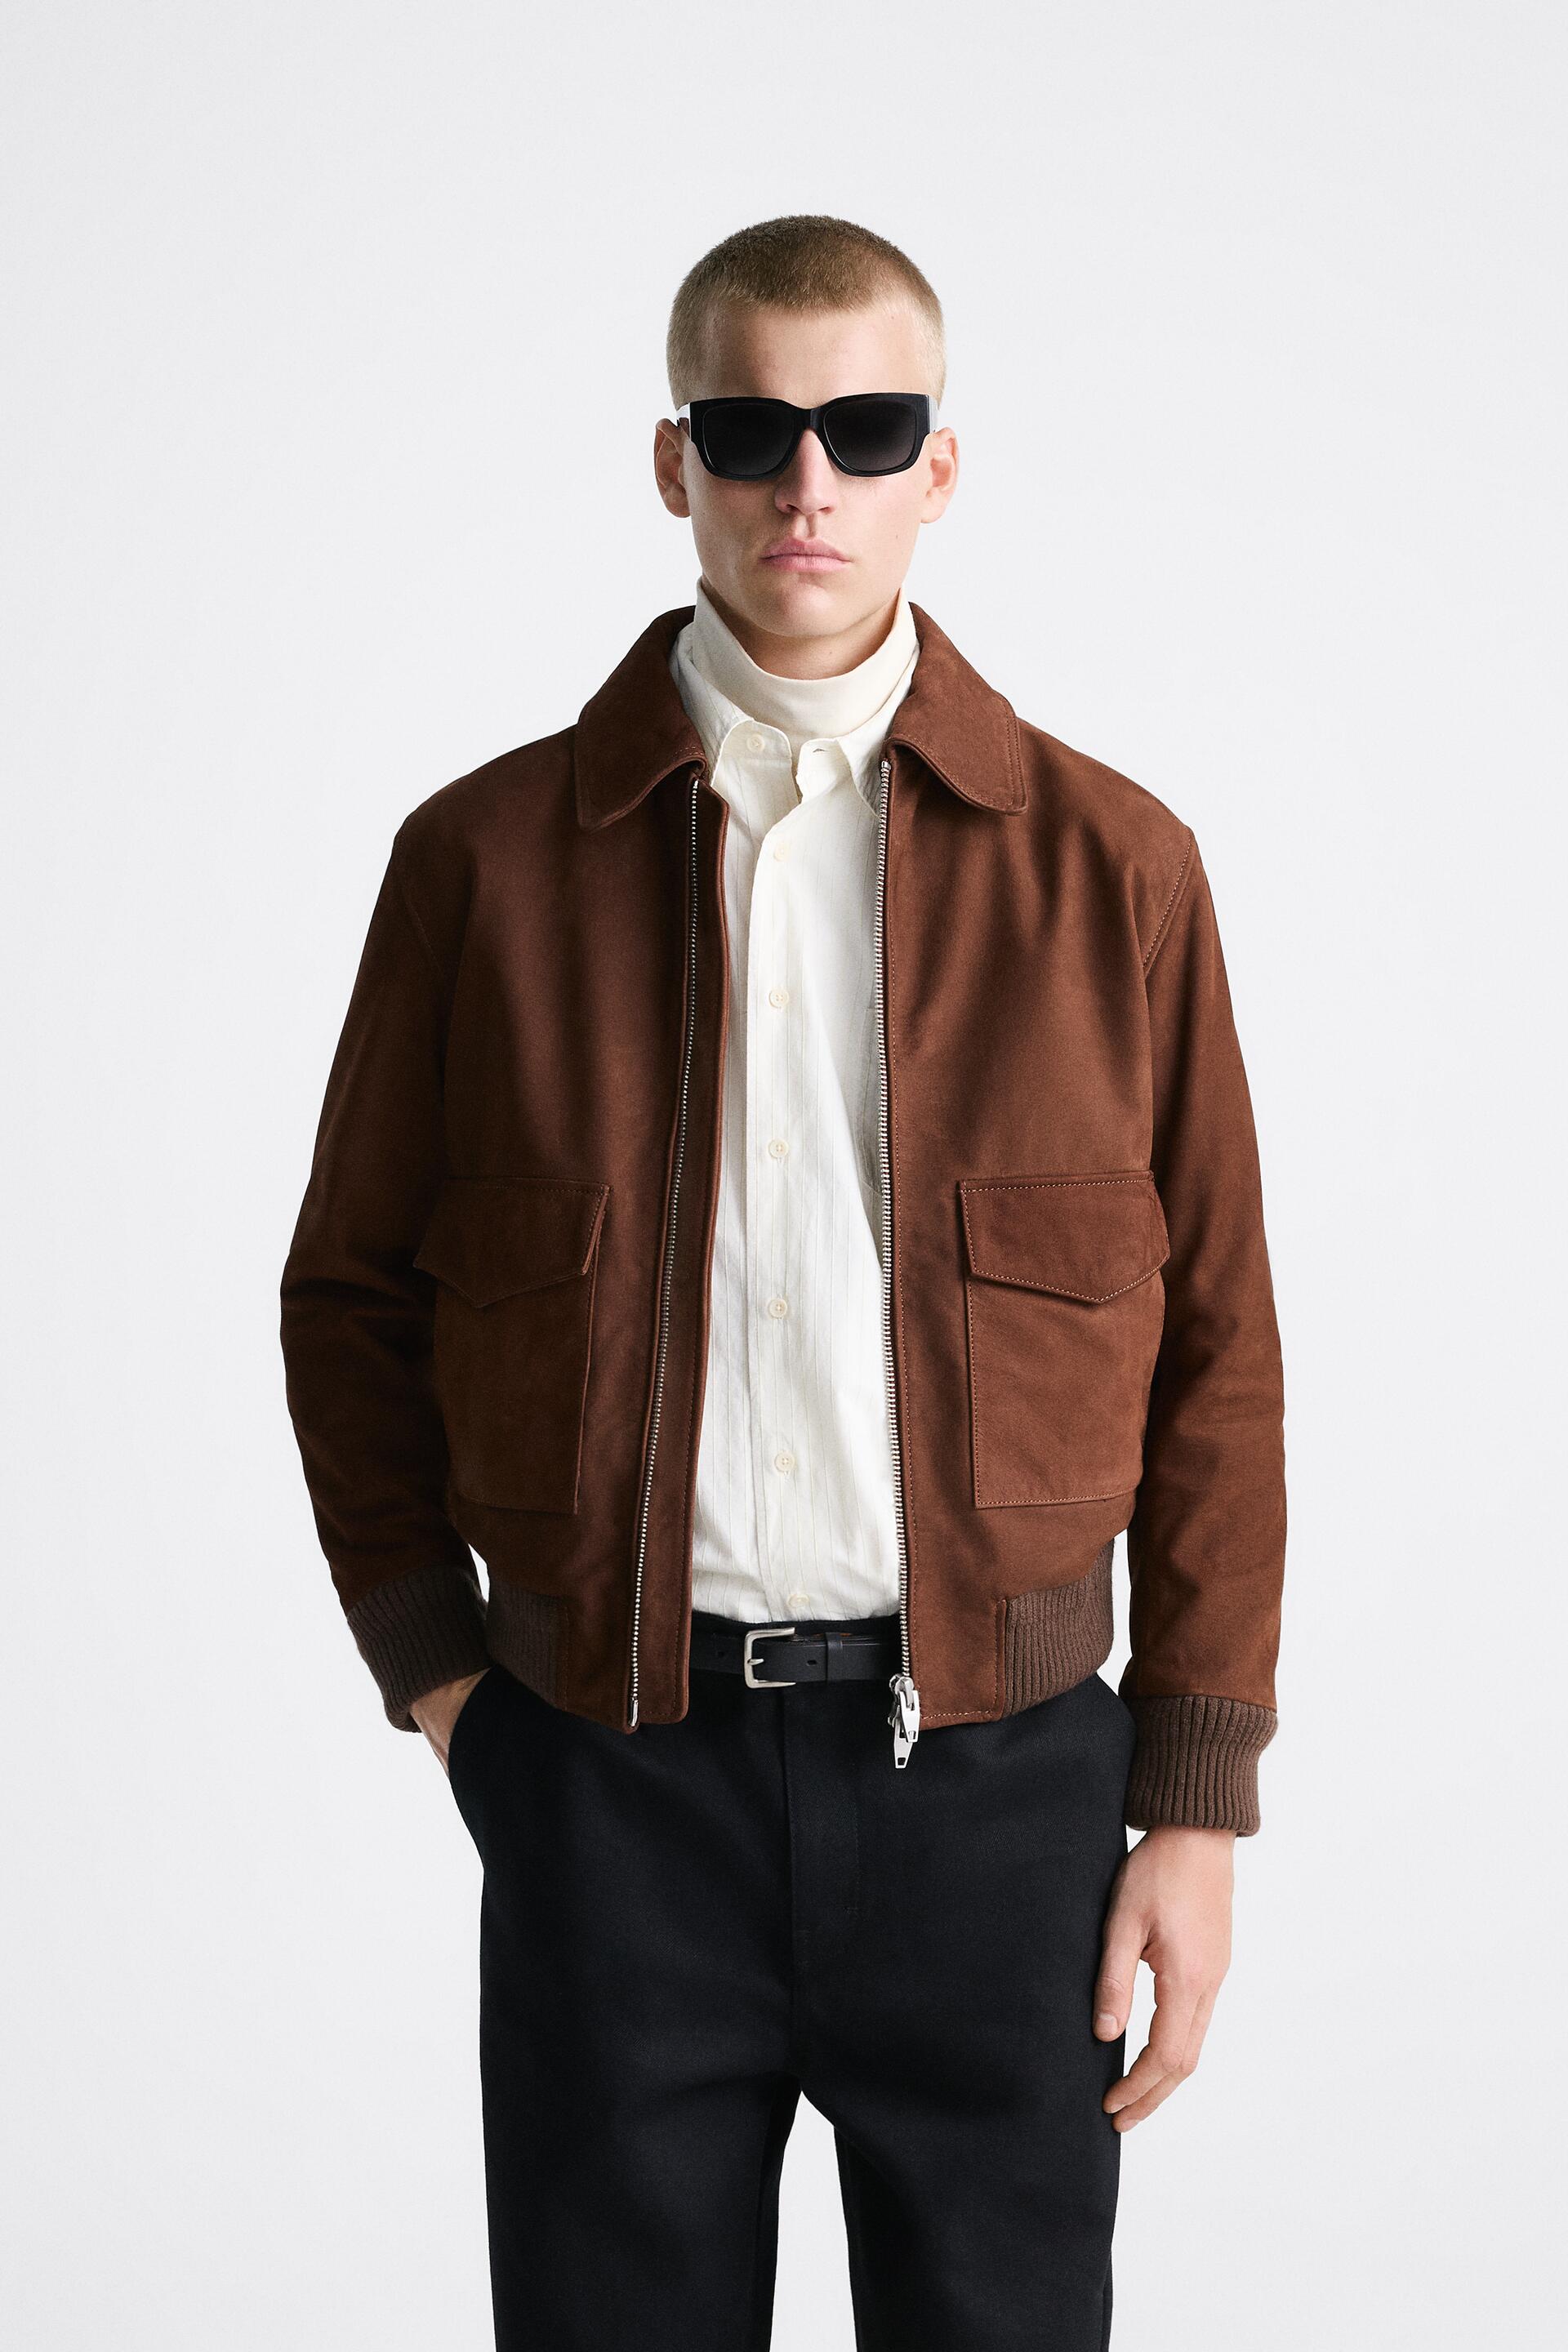 Кожаная куртка мужская ZARA 05388406 коричневая L (доставка из-за рубежа)